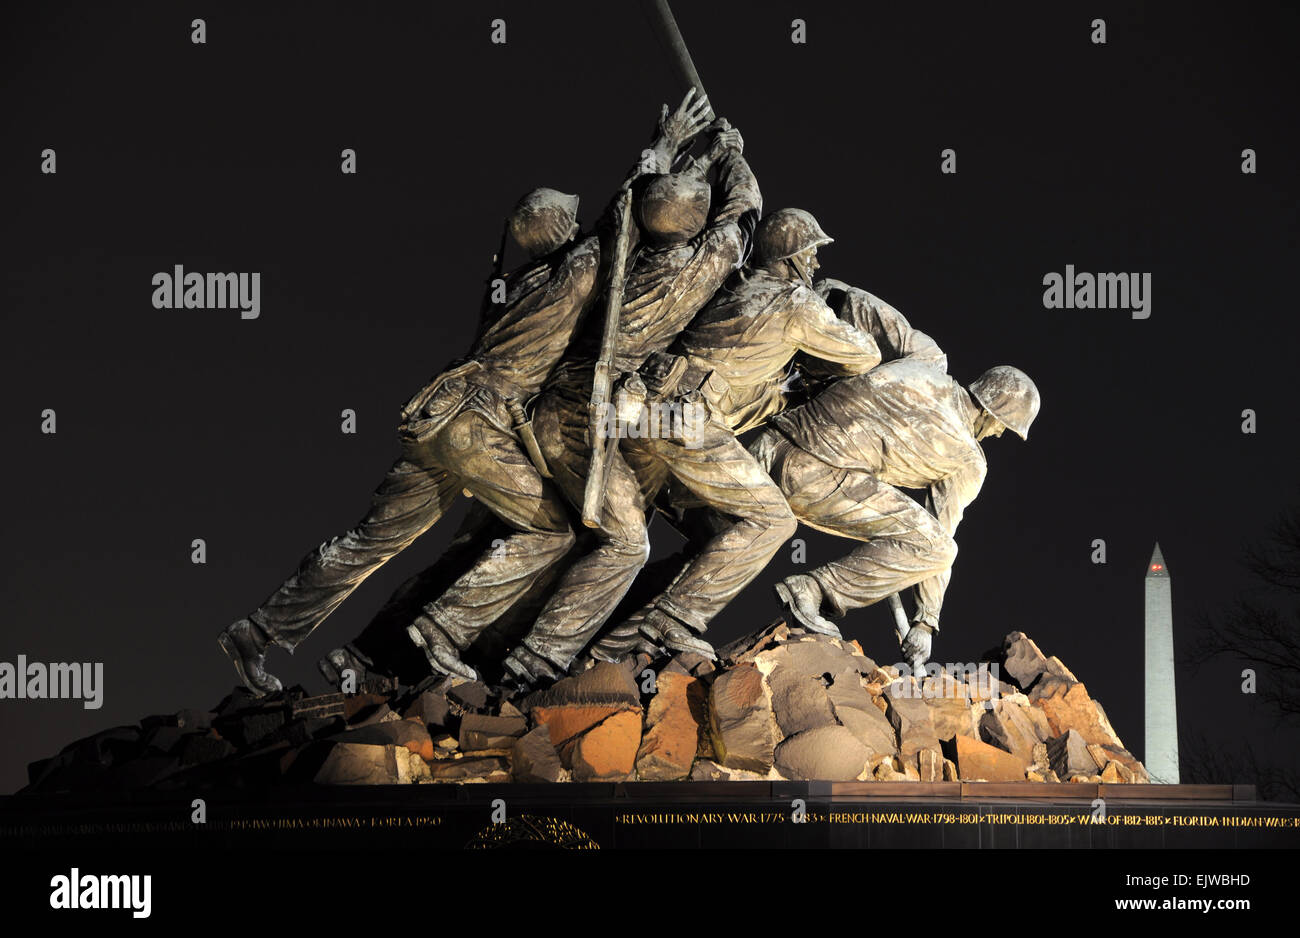 Marine Corps War - Iwo Jima - Memorial Stock Photo